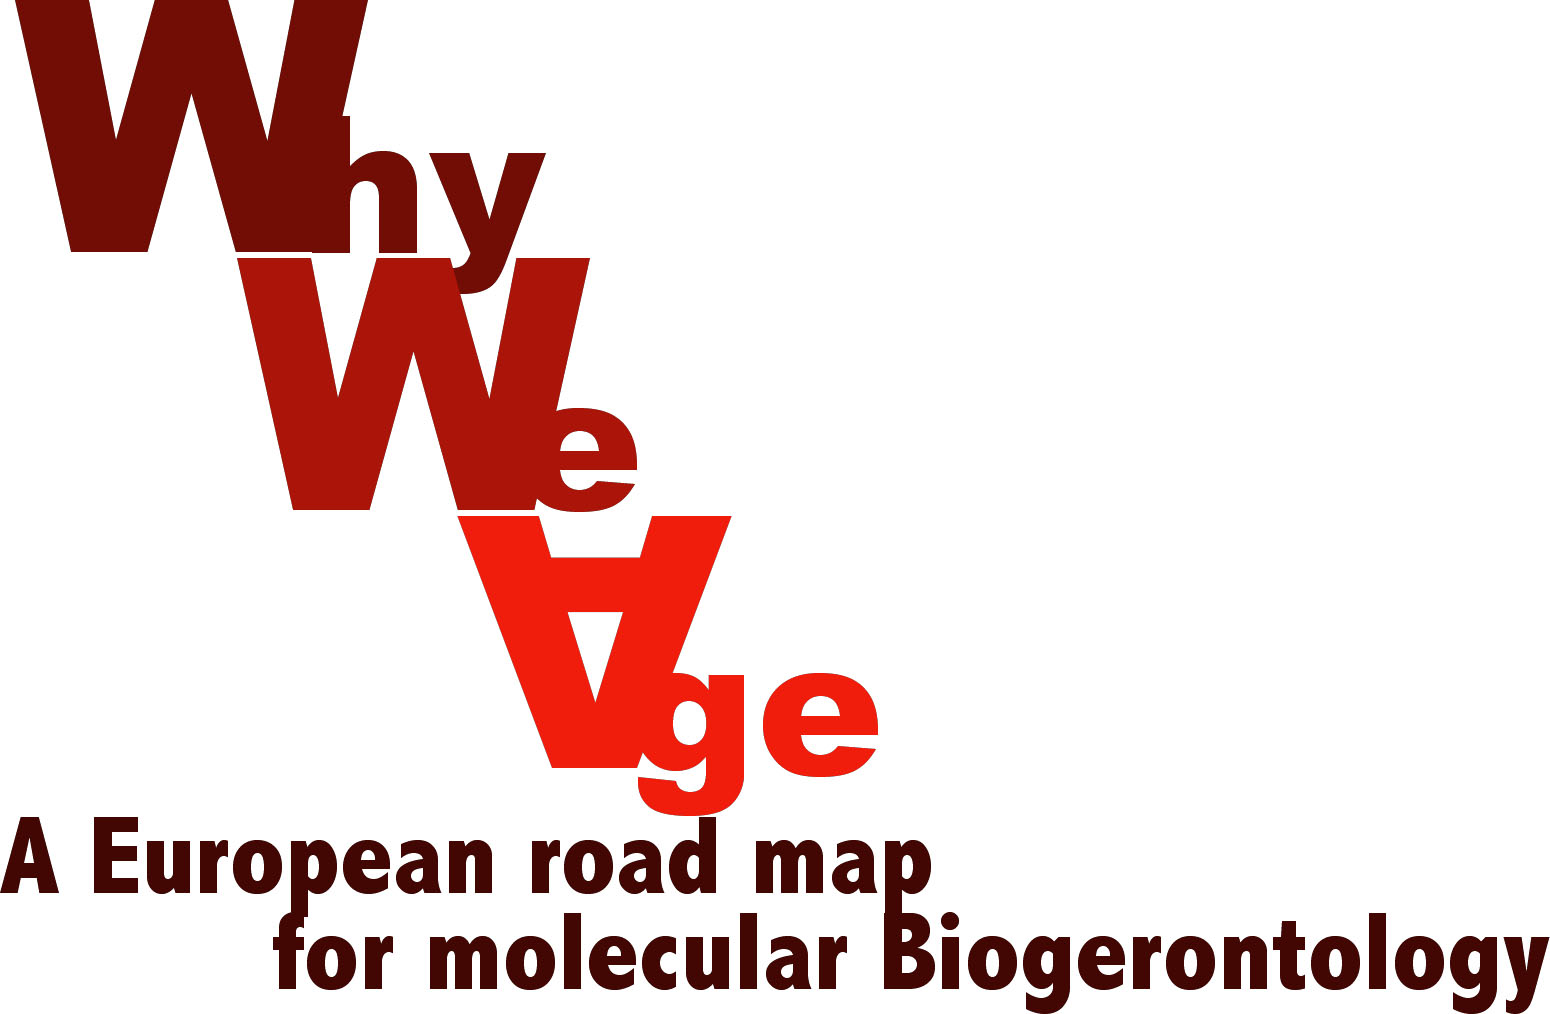 A European road map for molecular Biogerontology